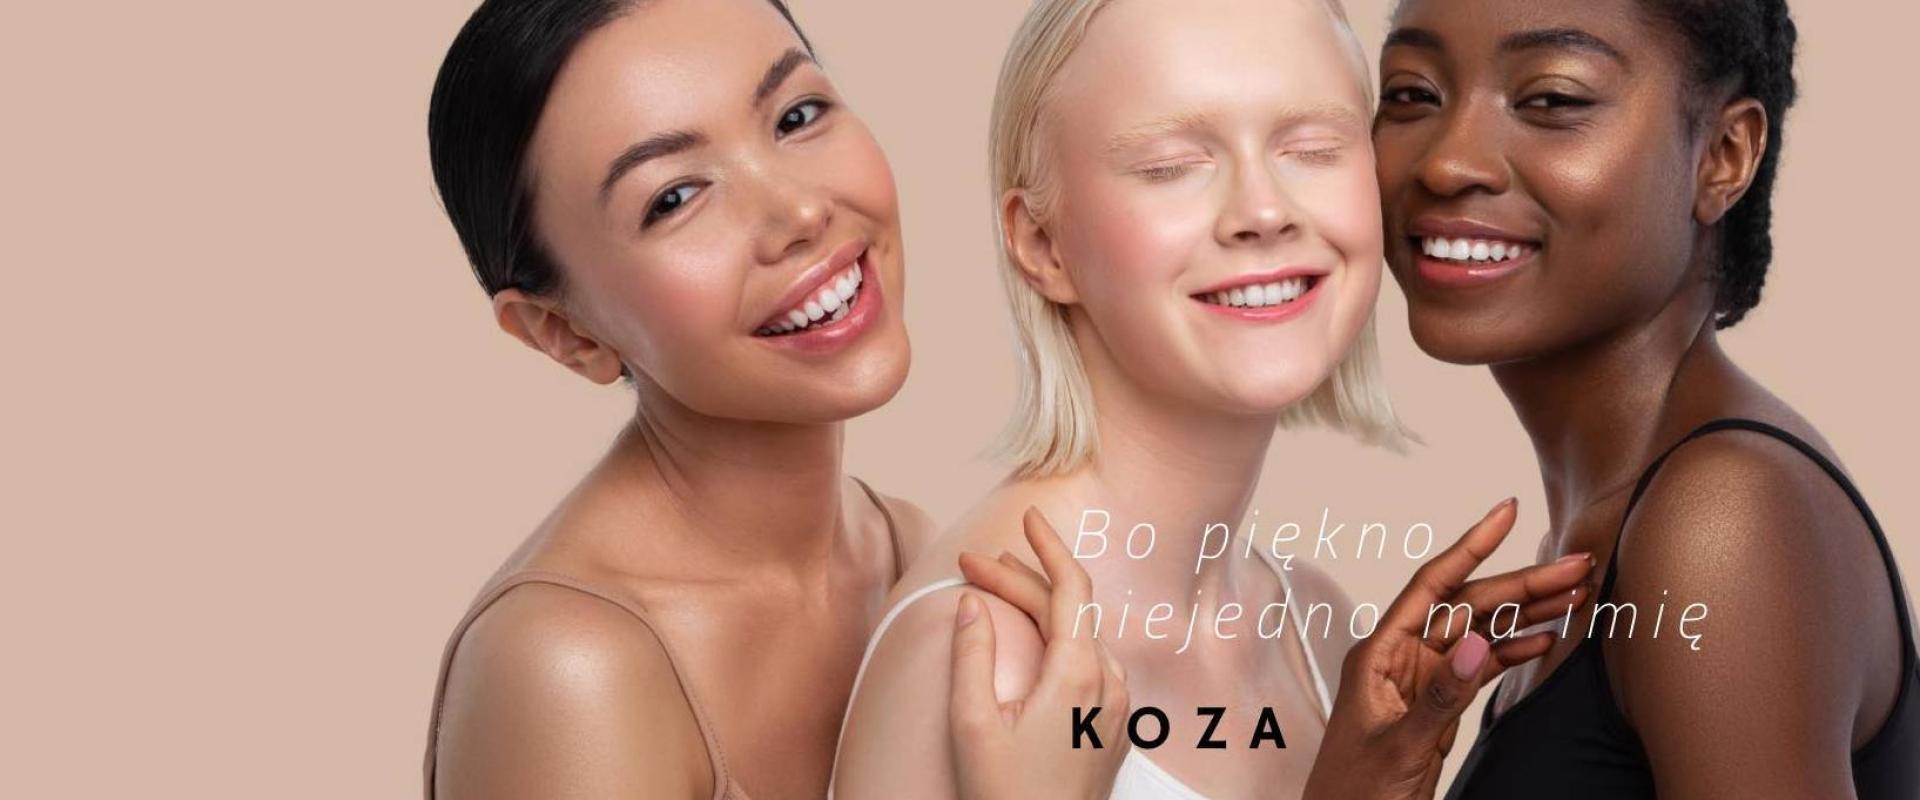 Kasia Kozłowska-Kołodziejska, K O Z A kosmetyki naturalne: Wspólnie zmieniamy barwę słów siostrzeństwo i kobiecość